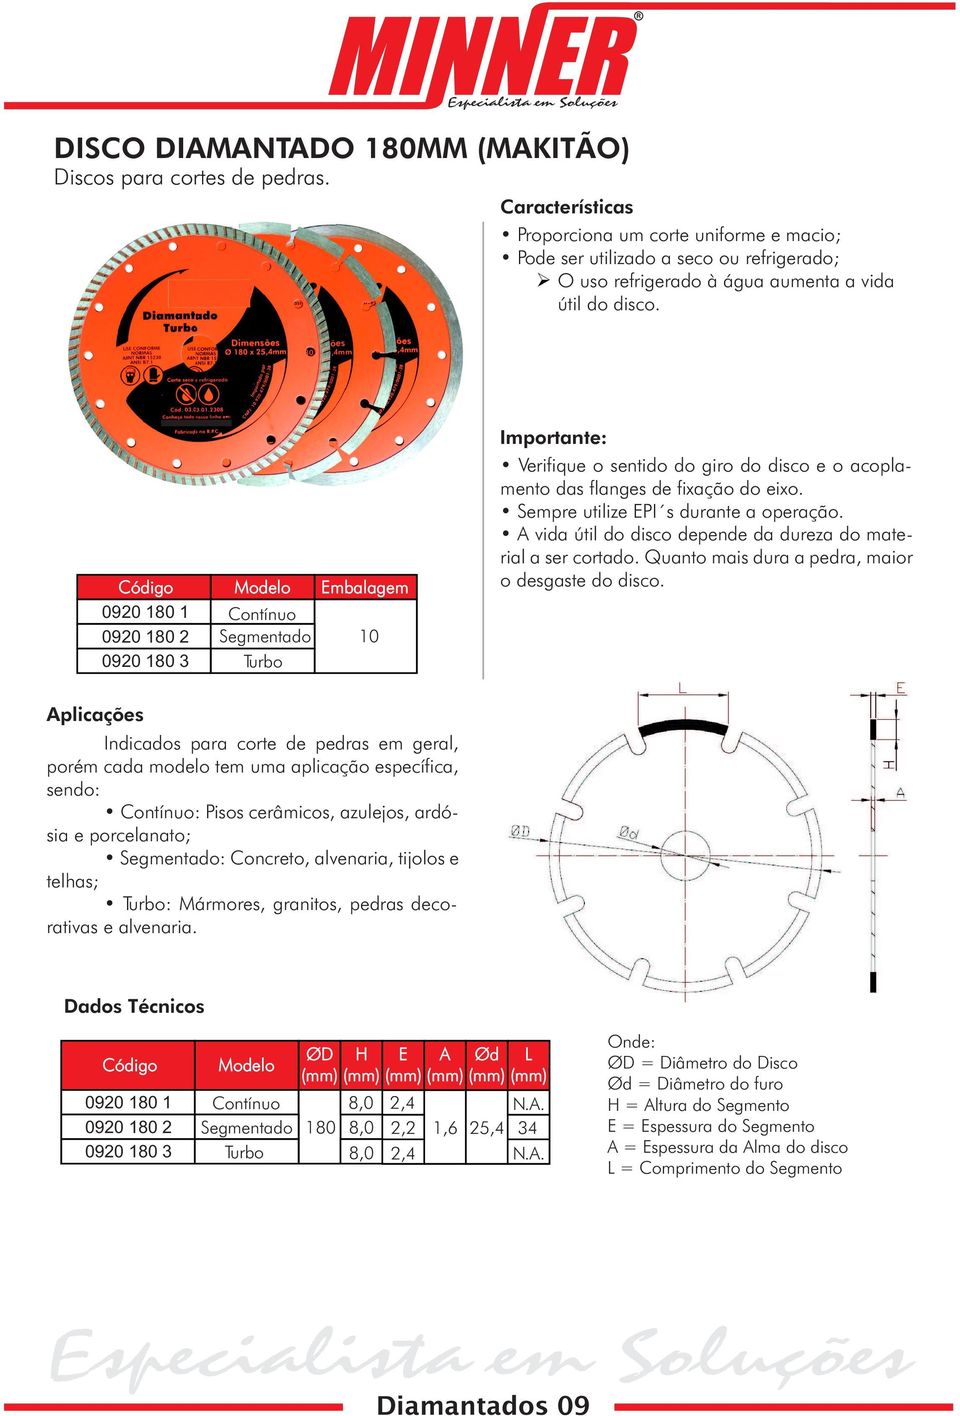 0920 180 1 0920 180 2 0920 180 3 Modelo Embalagem Contínuo Segmentado 10 Turbo Importante: Verifique o sentido do giro do disco e o acoplamento das flanges de fixação do eixo.